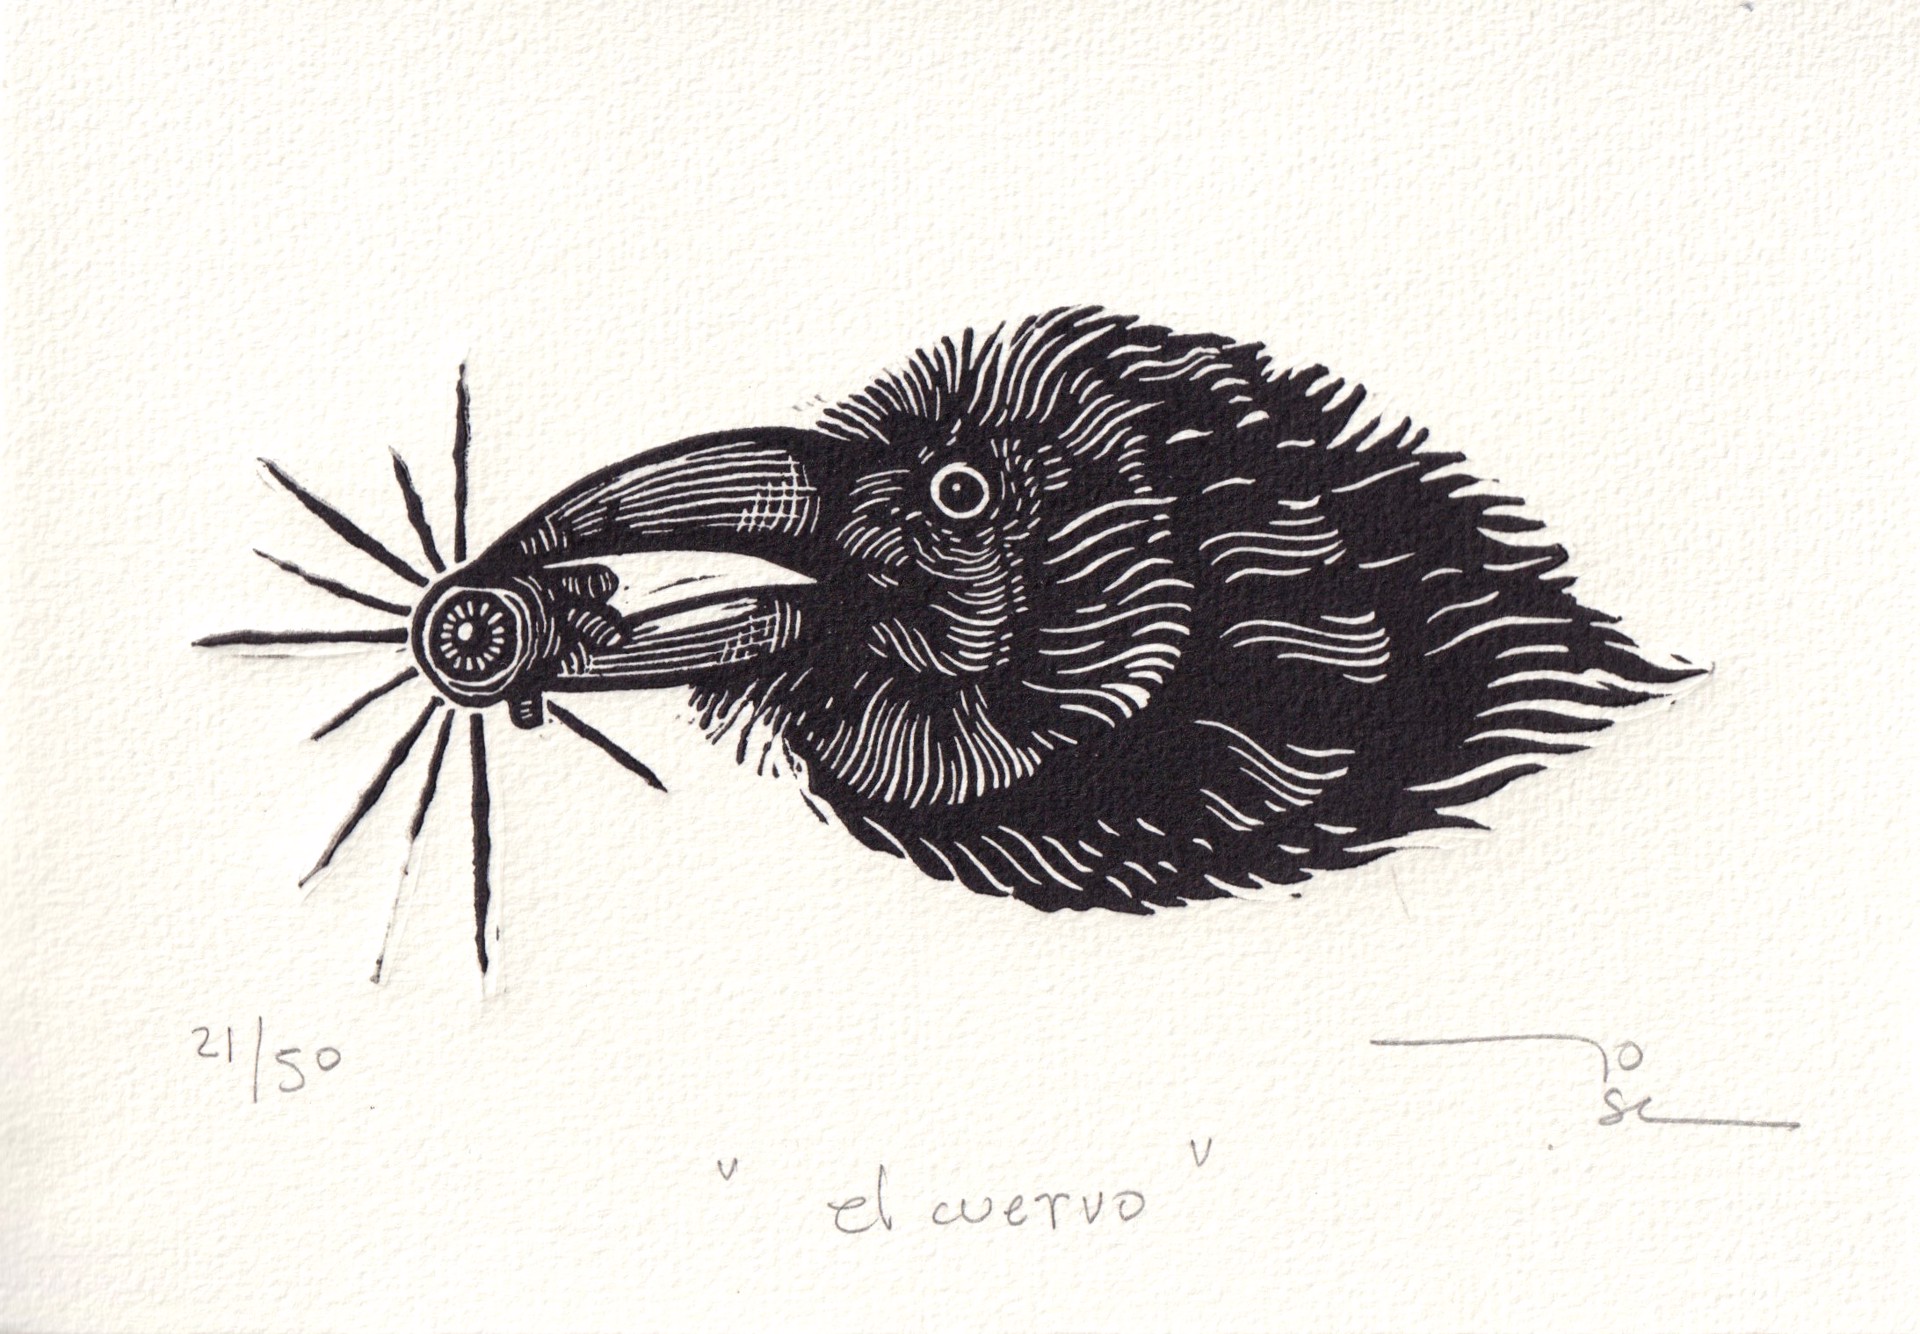 El Cuervo by José López